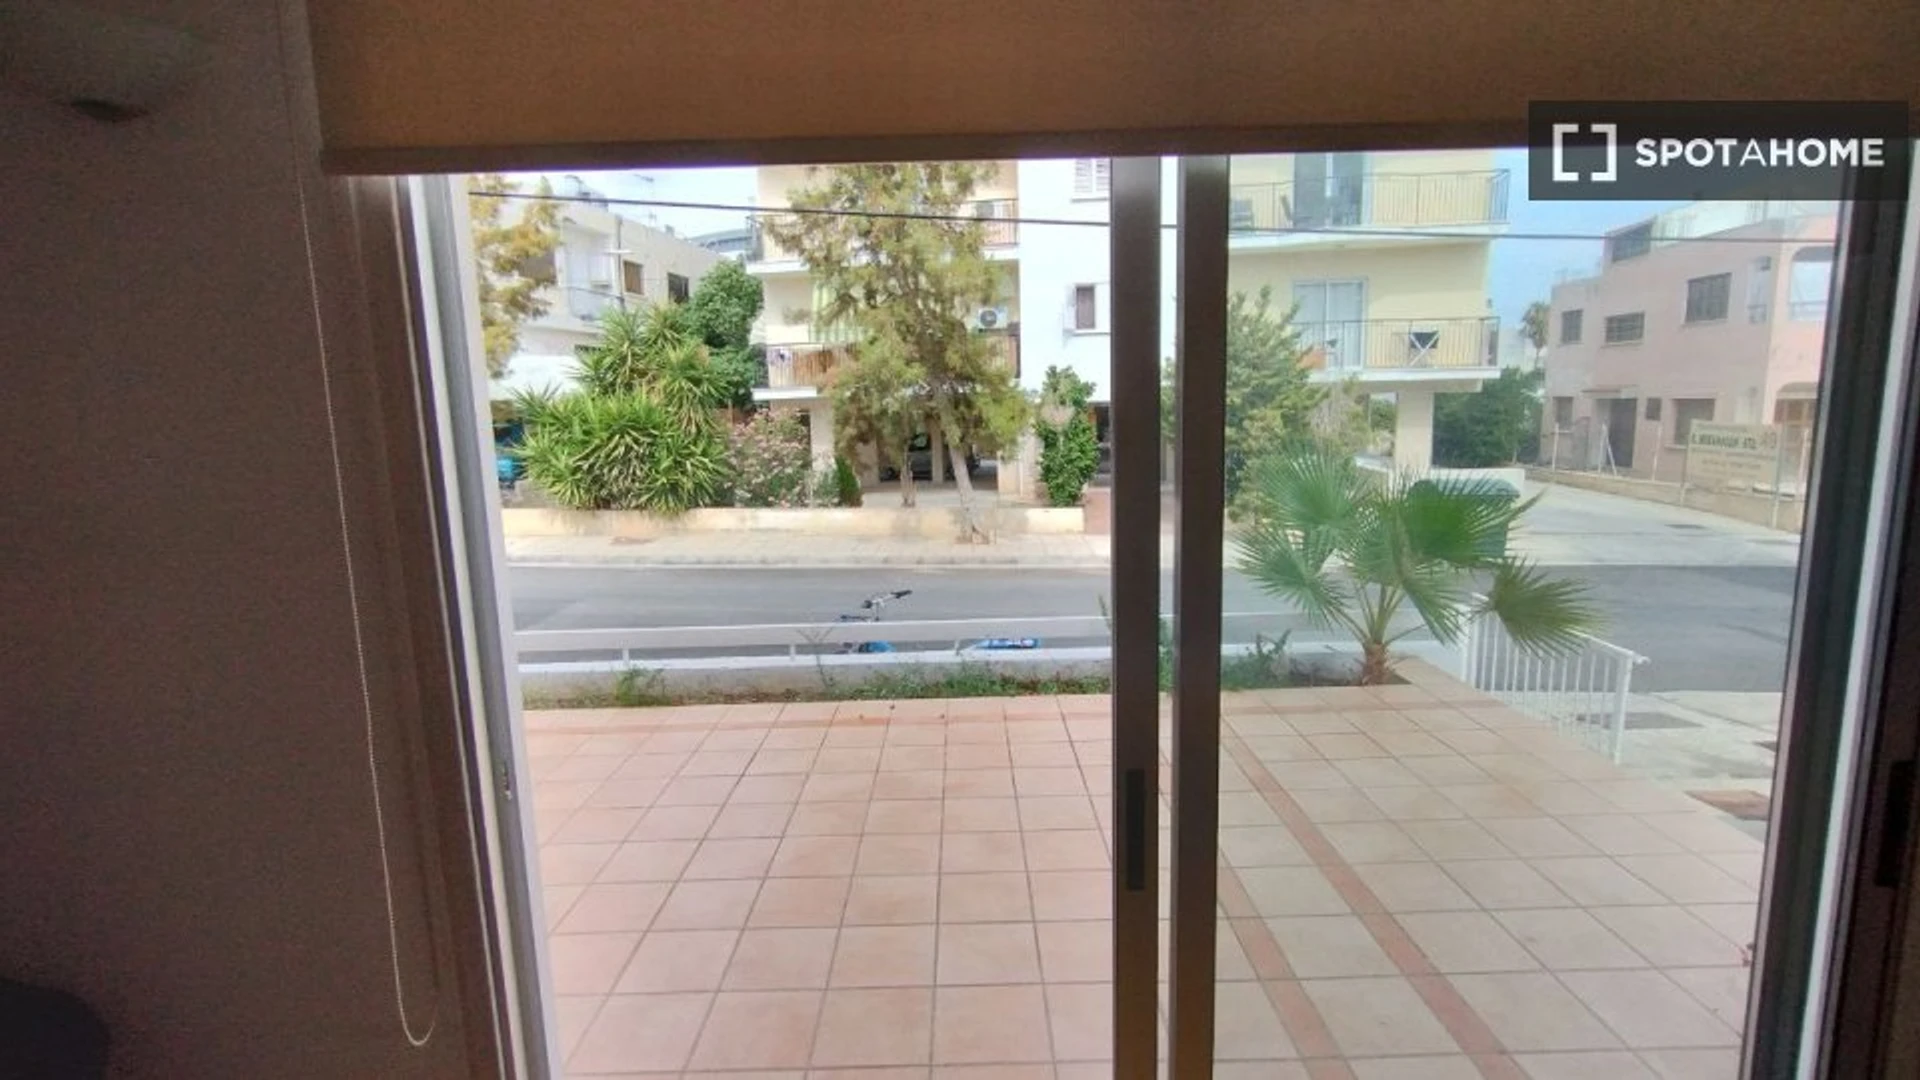 Alquiler de habitación en piso compartido en Nicosia